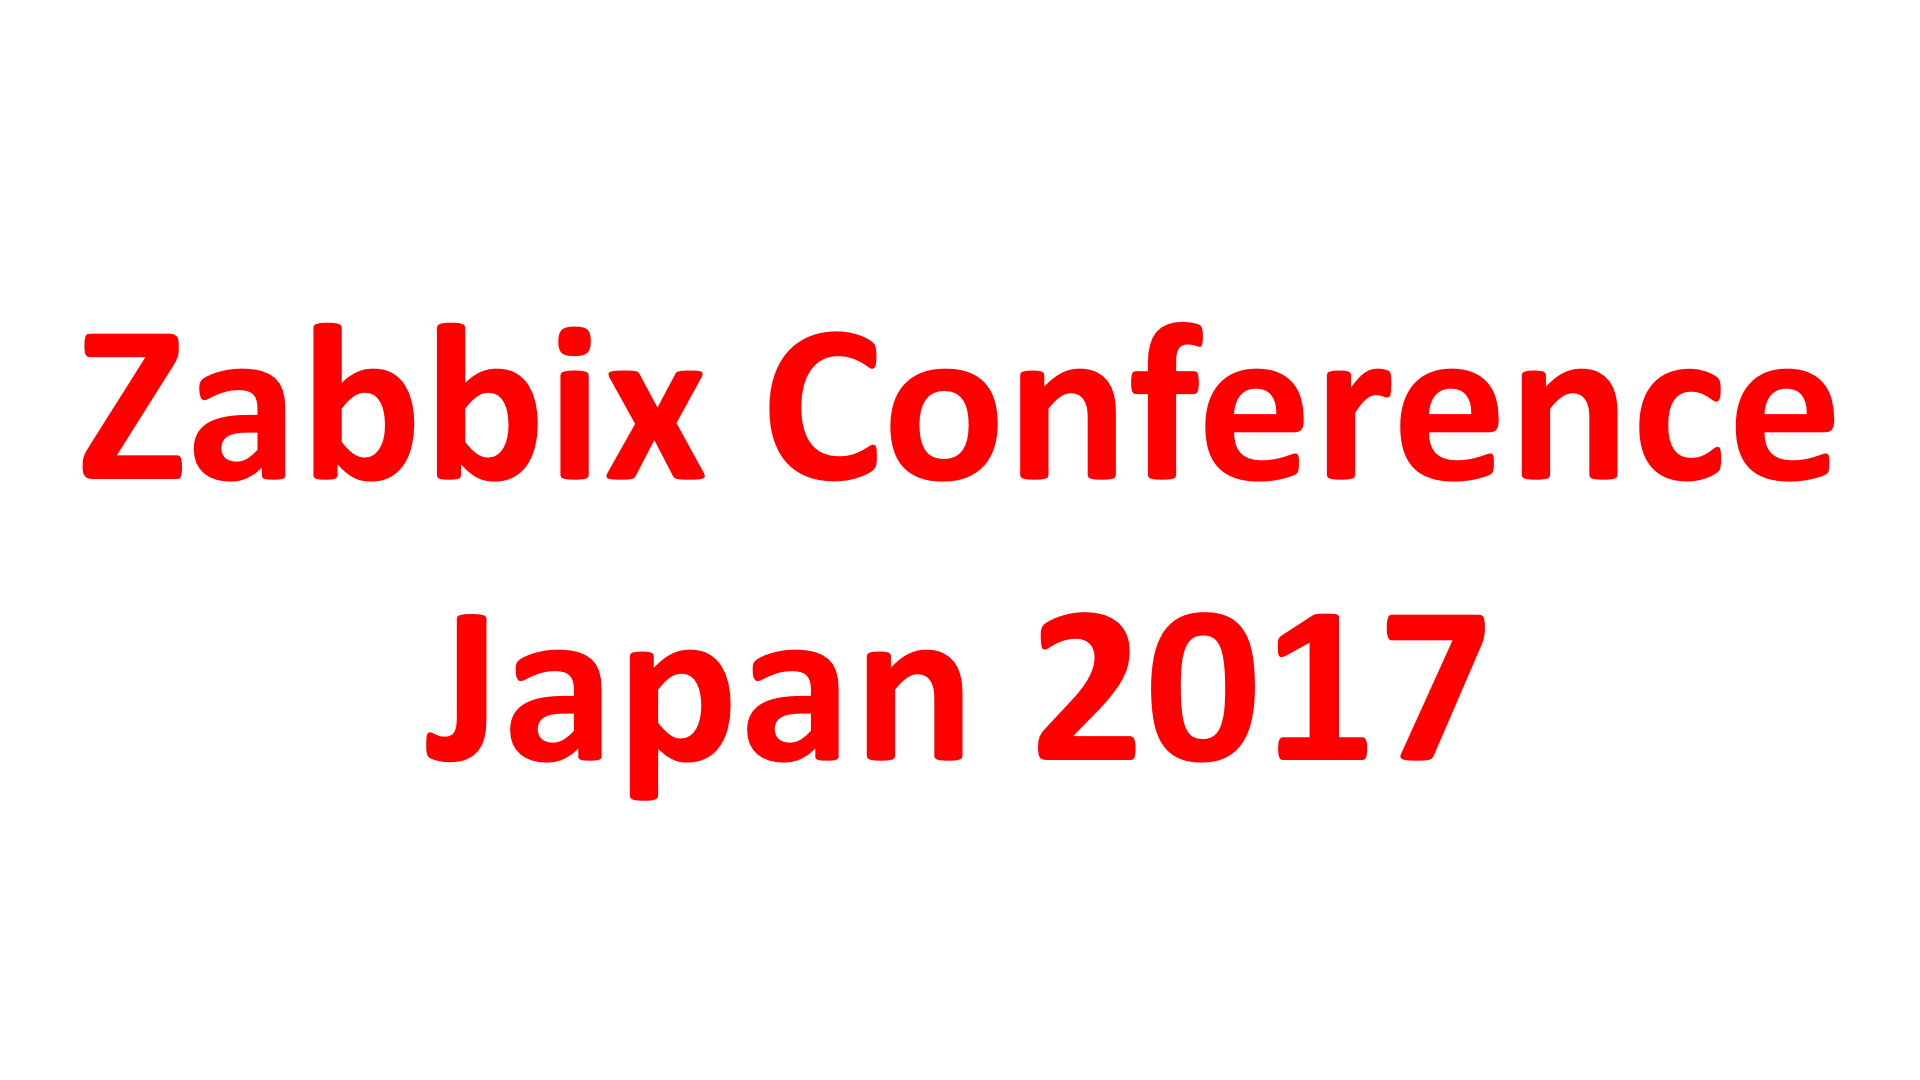 Zabbix Conference Japan 2017